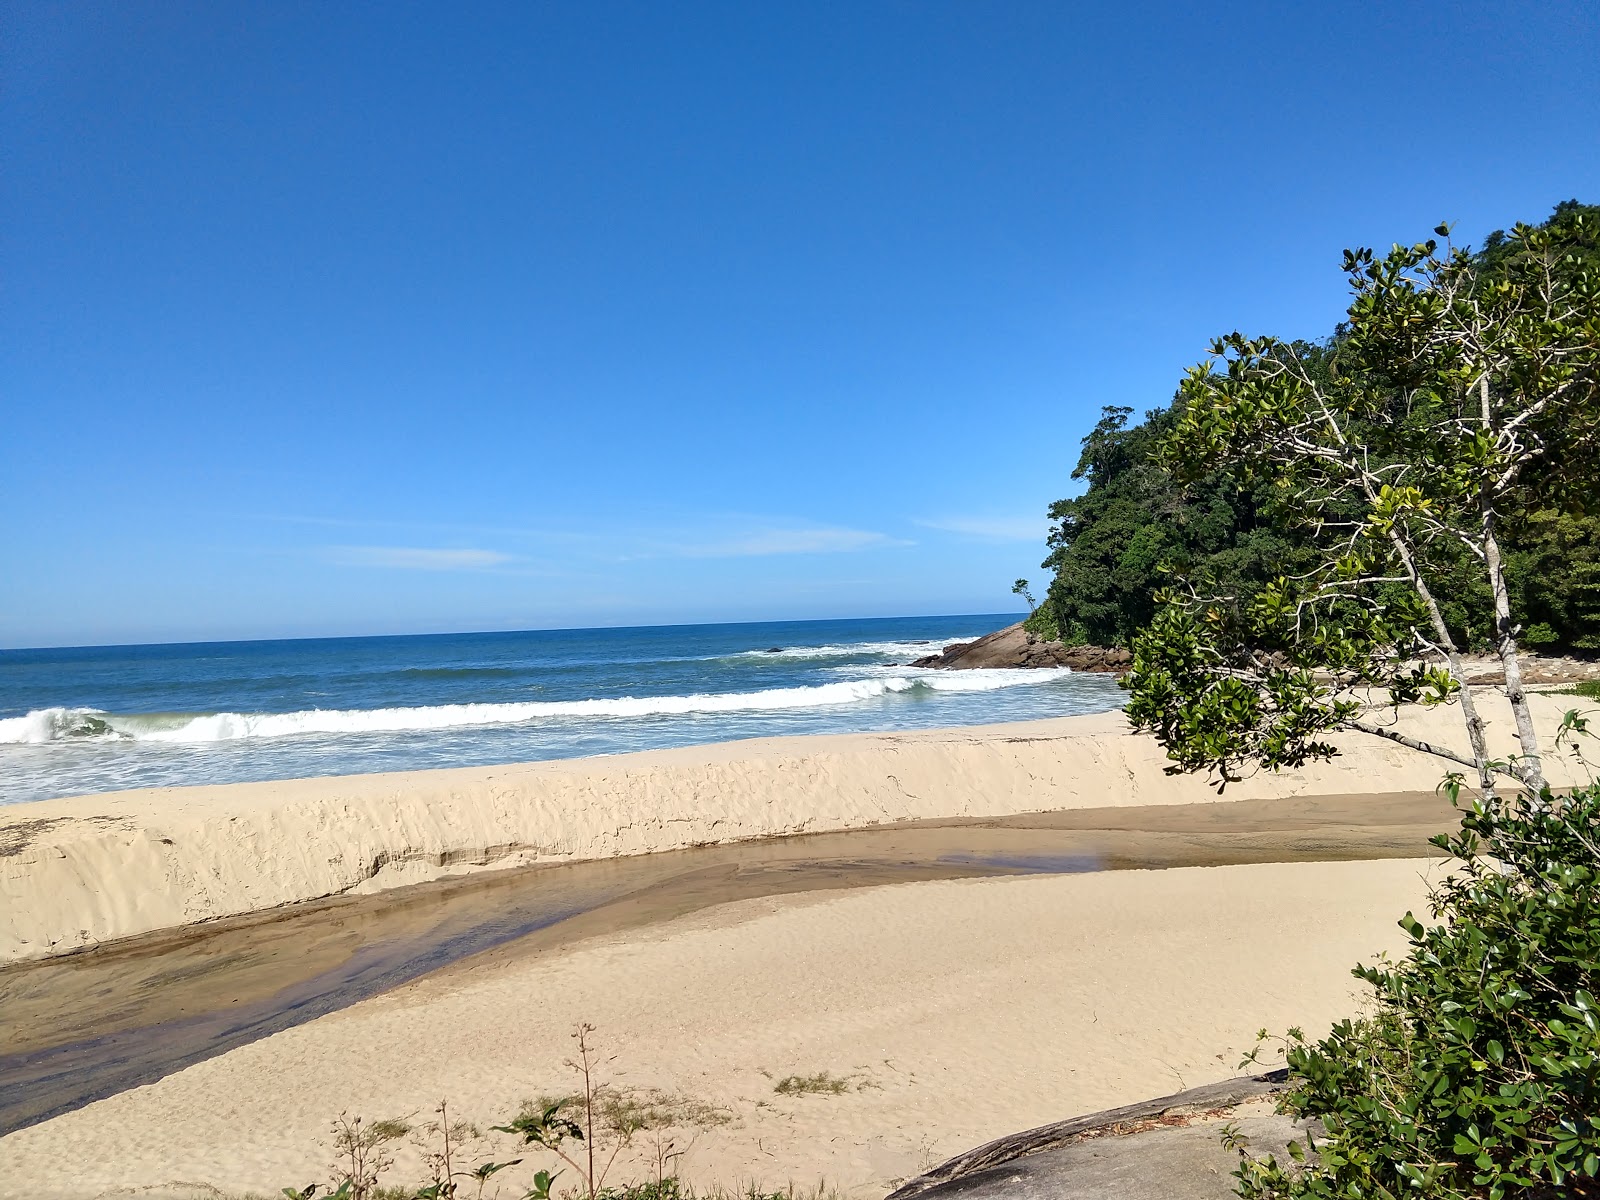 Fotografija Praia da Meia Lua nahaja se v naravnem okolju